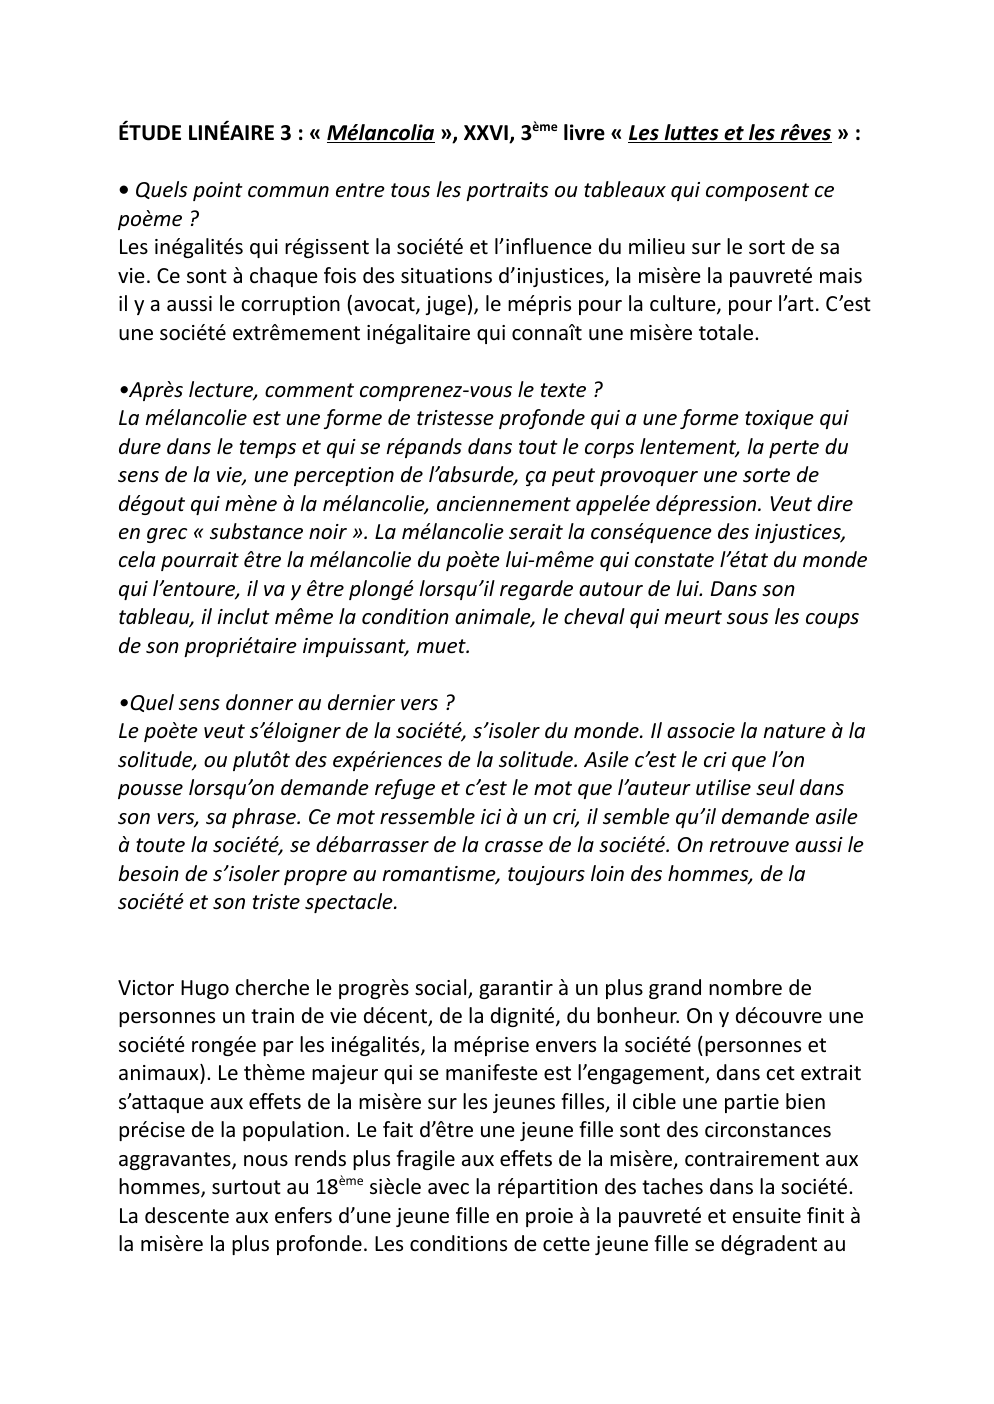 Prévisualisation du document ETUDE LINEAIRE MELANCHOLIA VICTOR HUGO